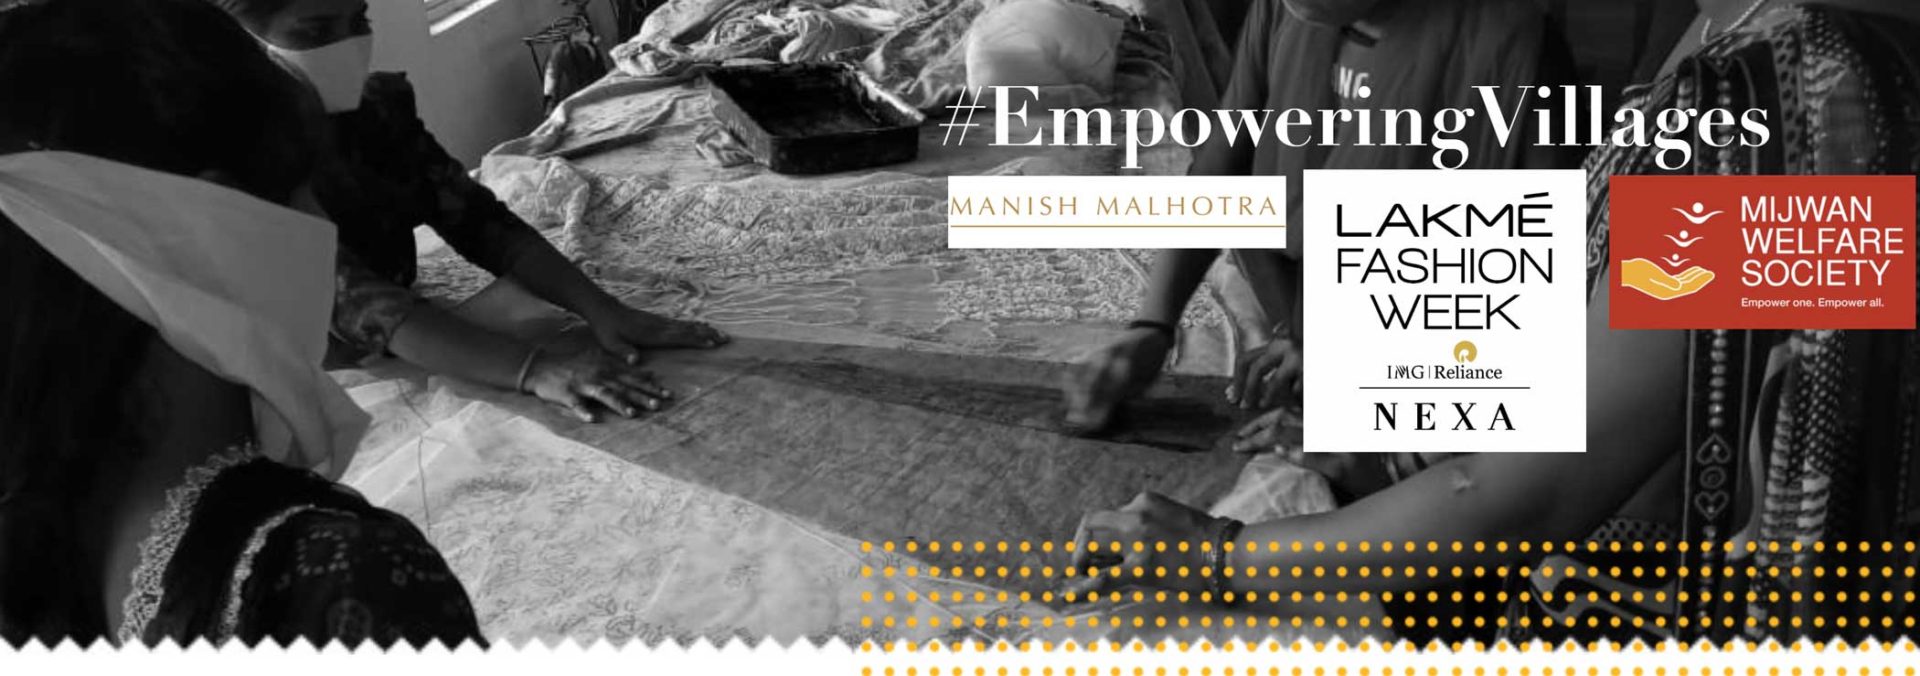 #EmpoweringVillages with Manish Malhotra and Lakmé Fashion Week